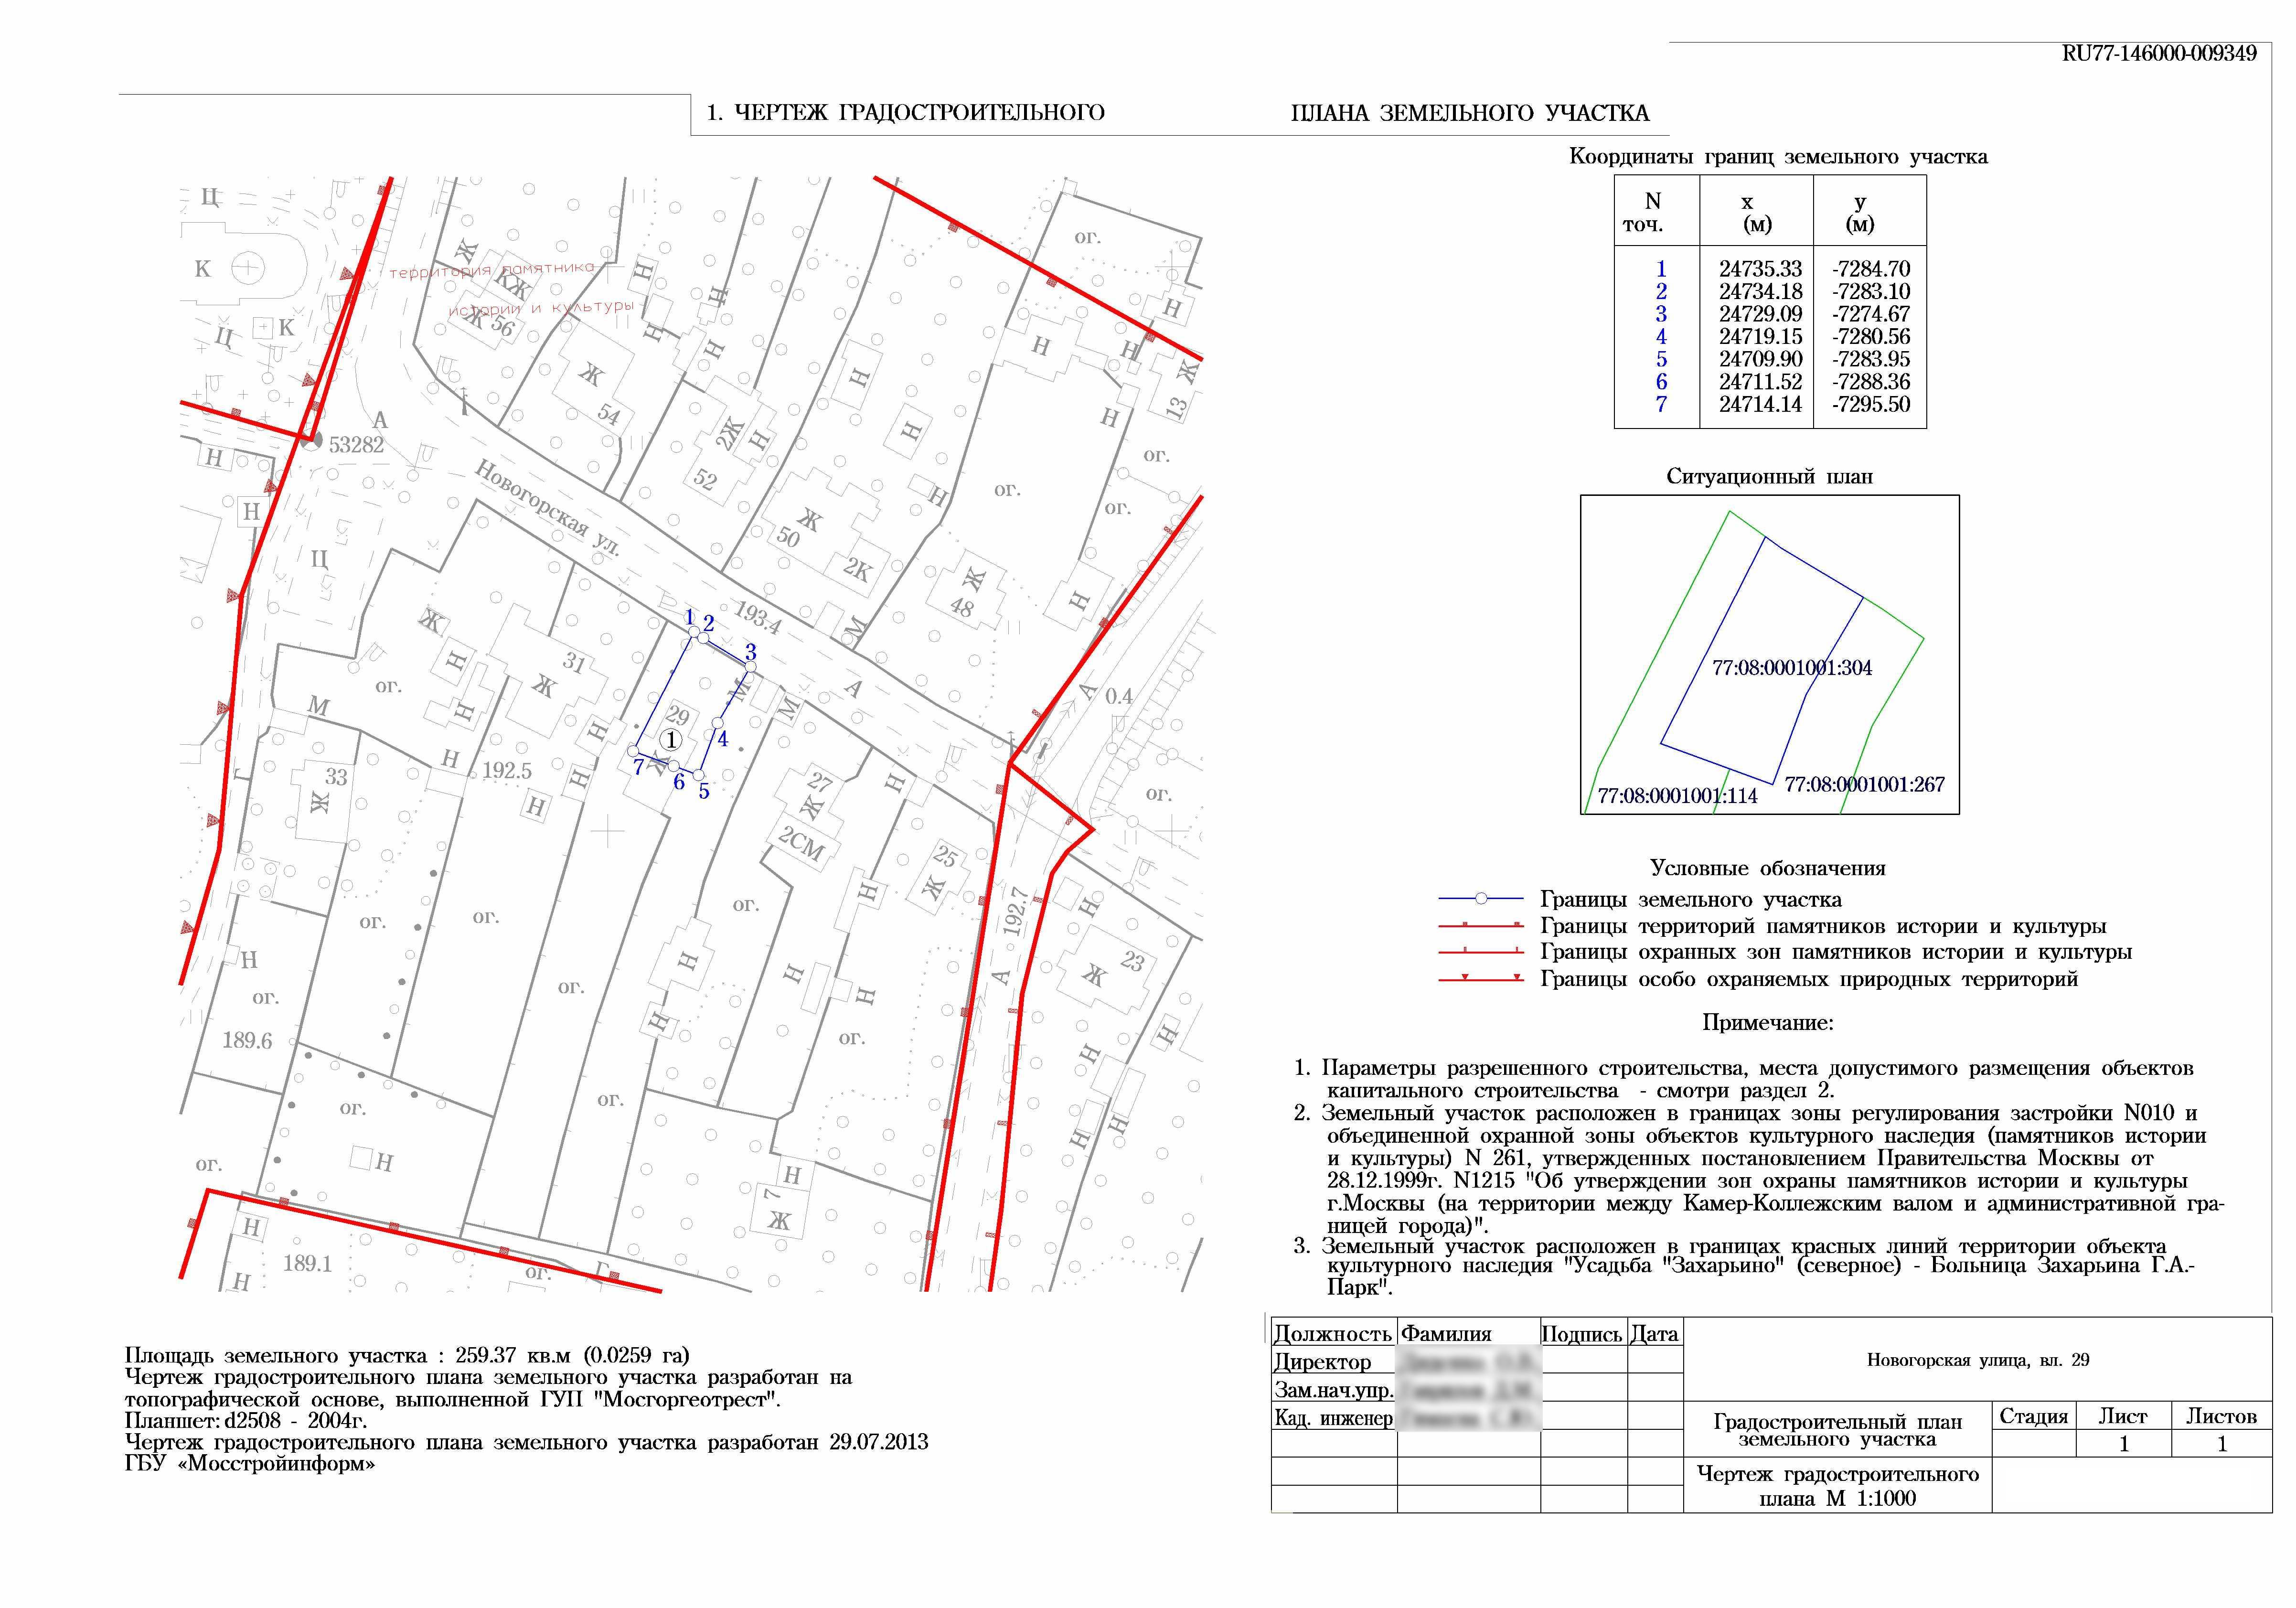 Топографический план земельного участка: как получить по кадастровому номеру, посредством проведения работ | baskal45.ru